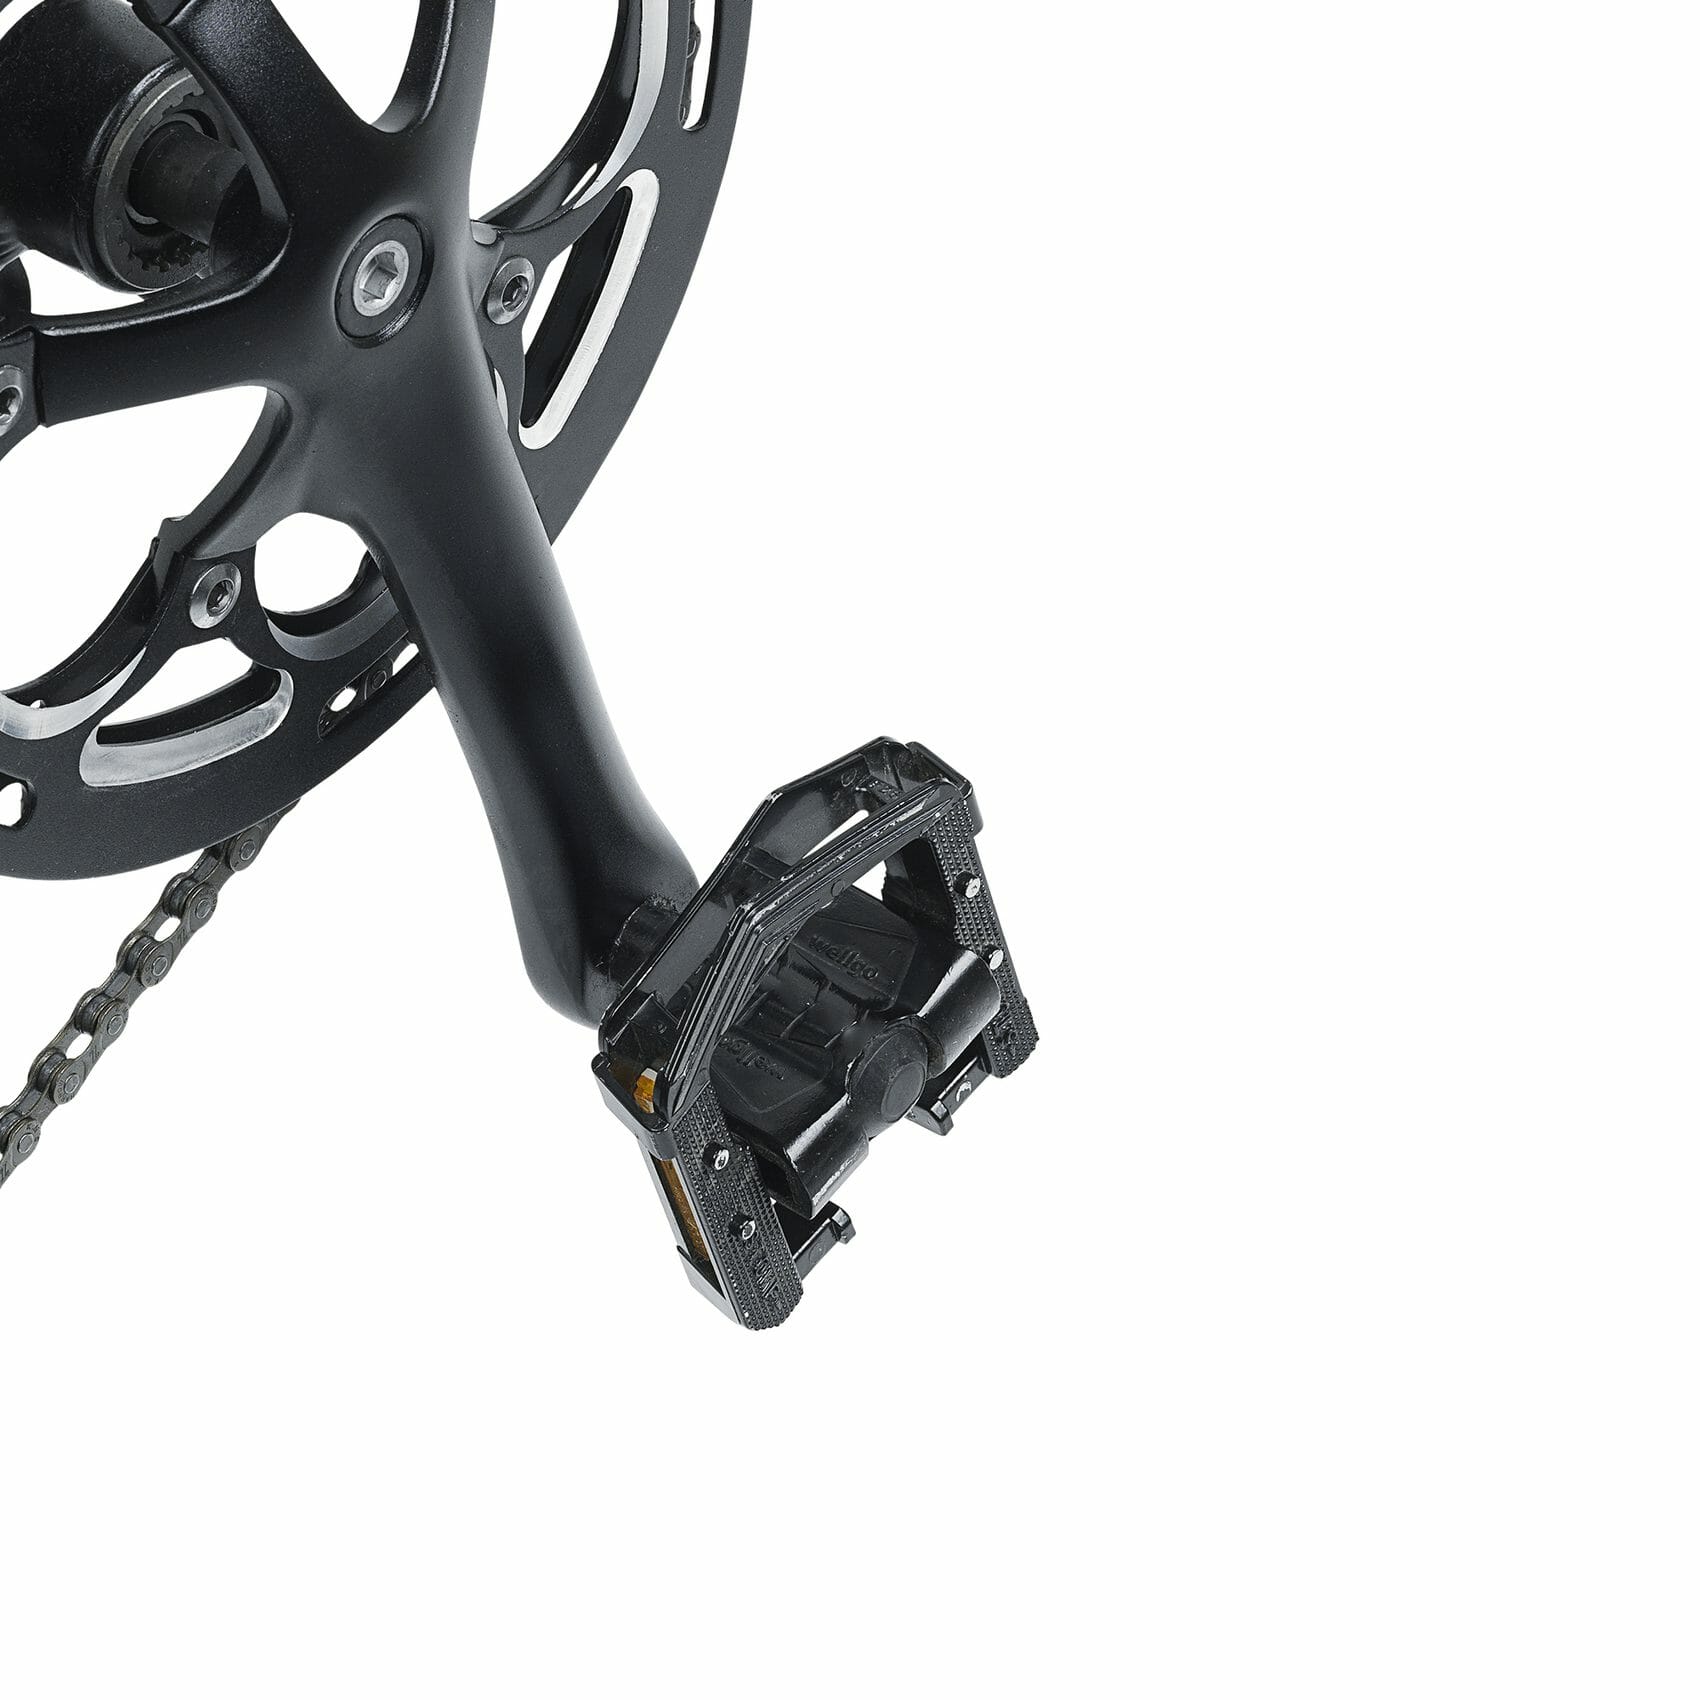 MATE X e-bike pedal close up